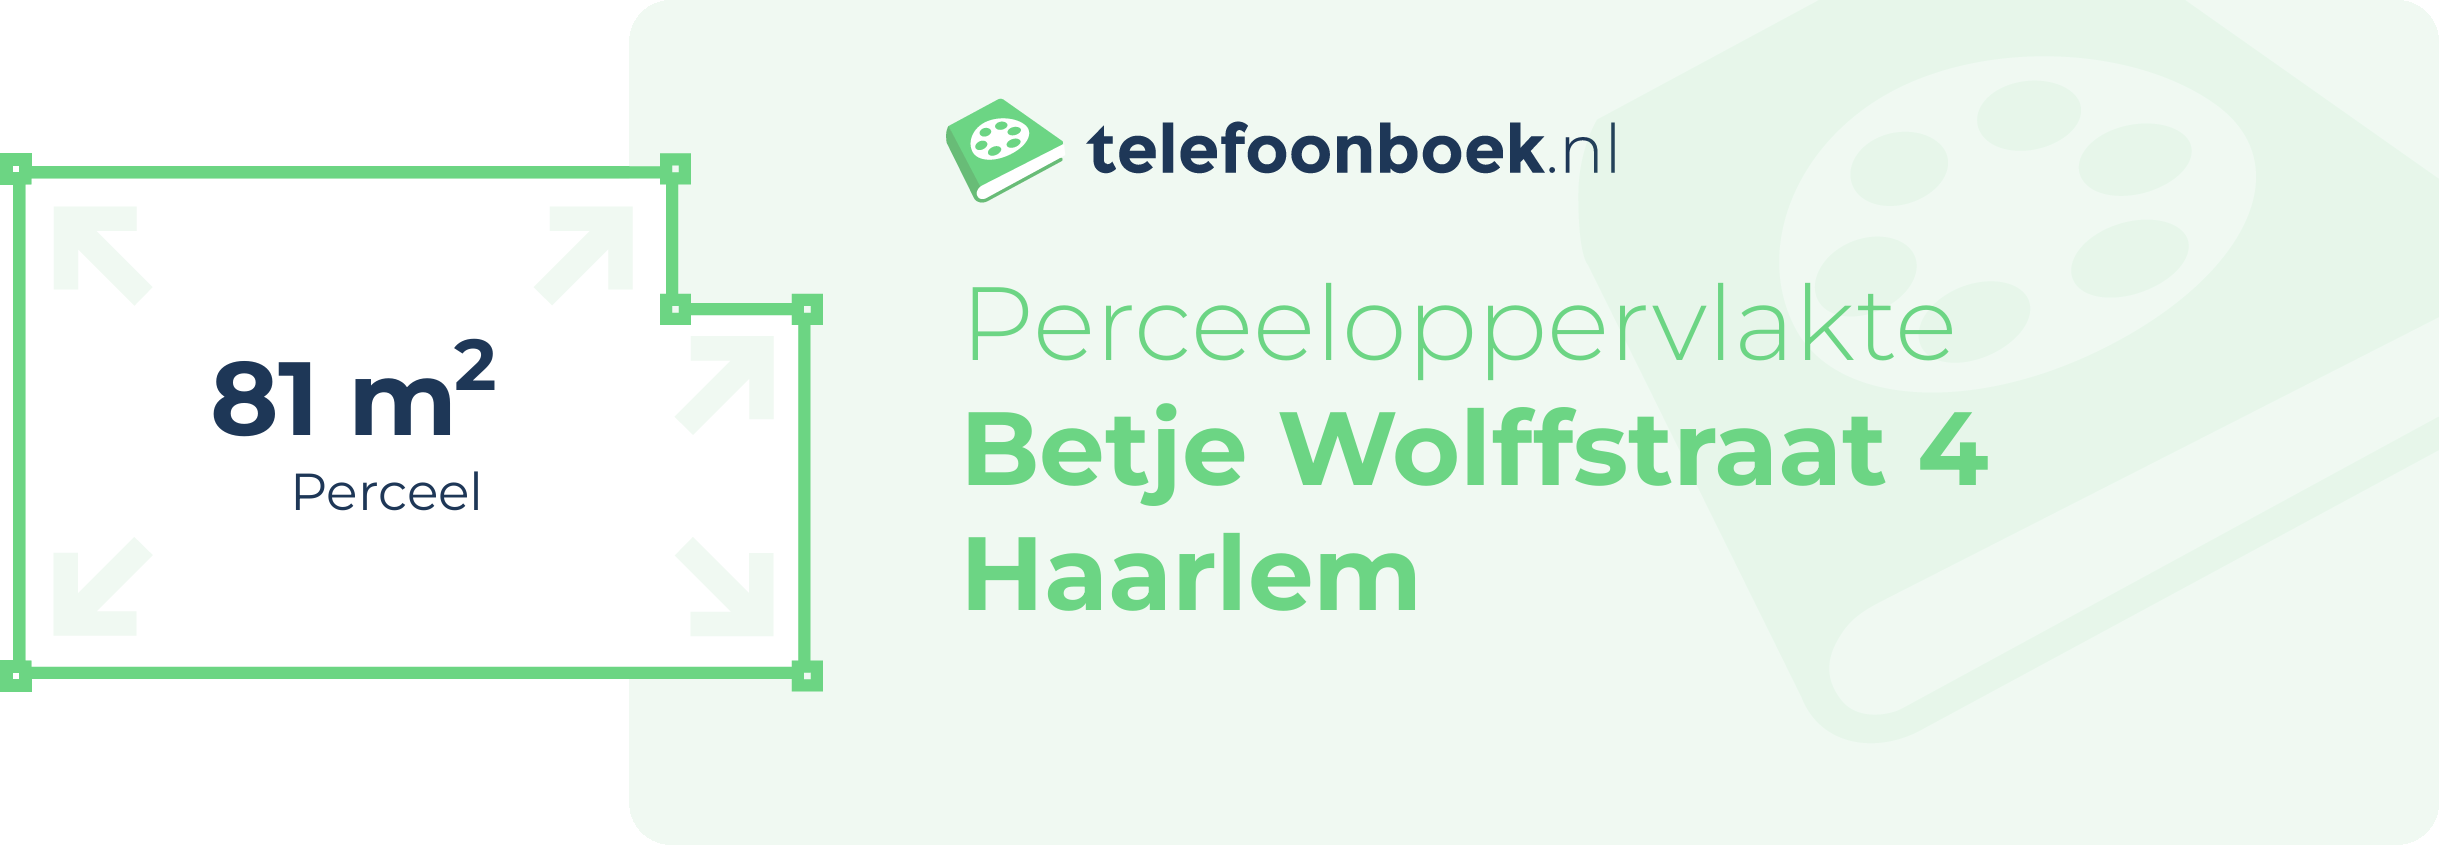 Perceeloppervlakte Betje Wolffstraat 4 Haarlem